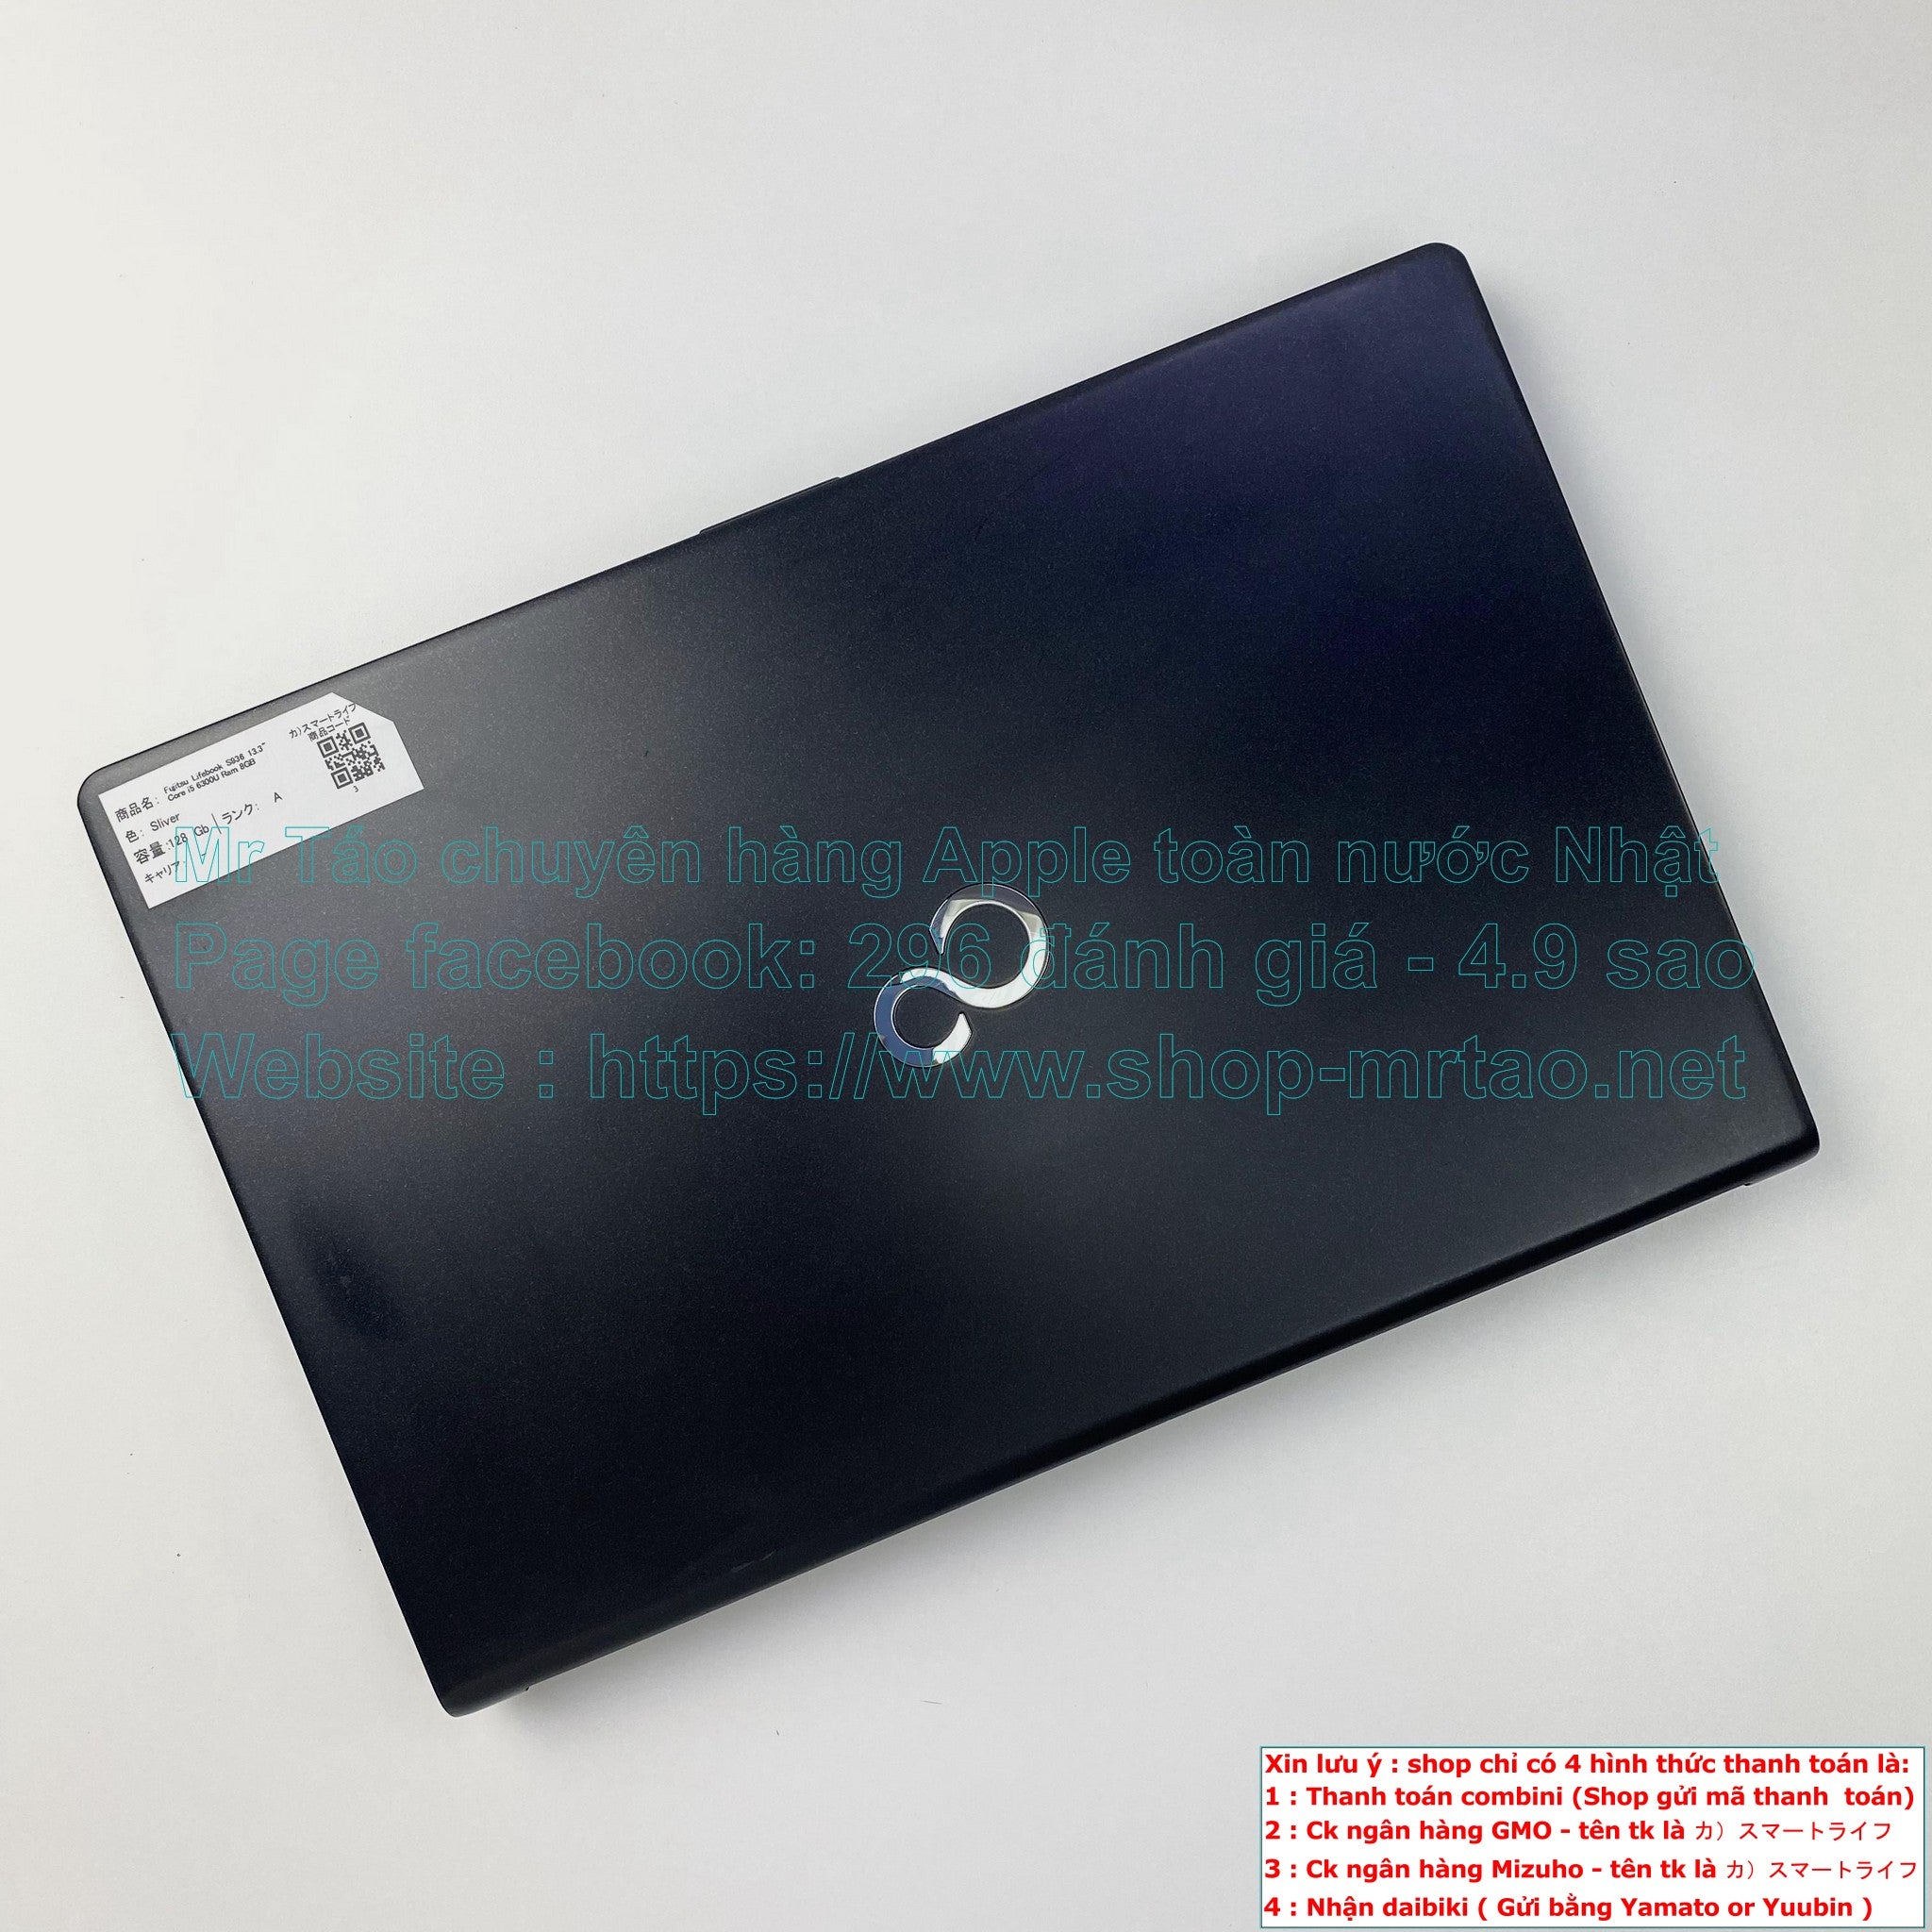 Fujitsu Lifebook S936 màu Black 13.3inch Core i5 6300U Ram 8GB